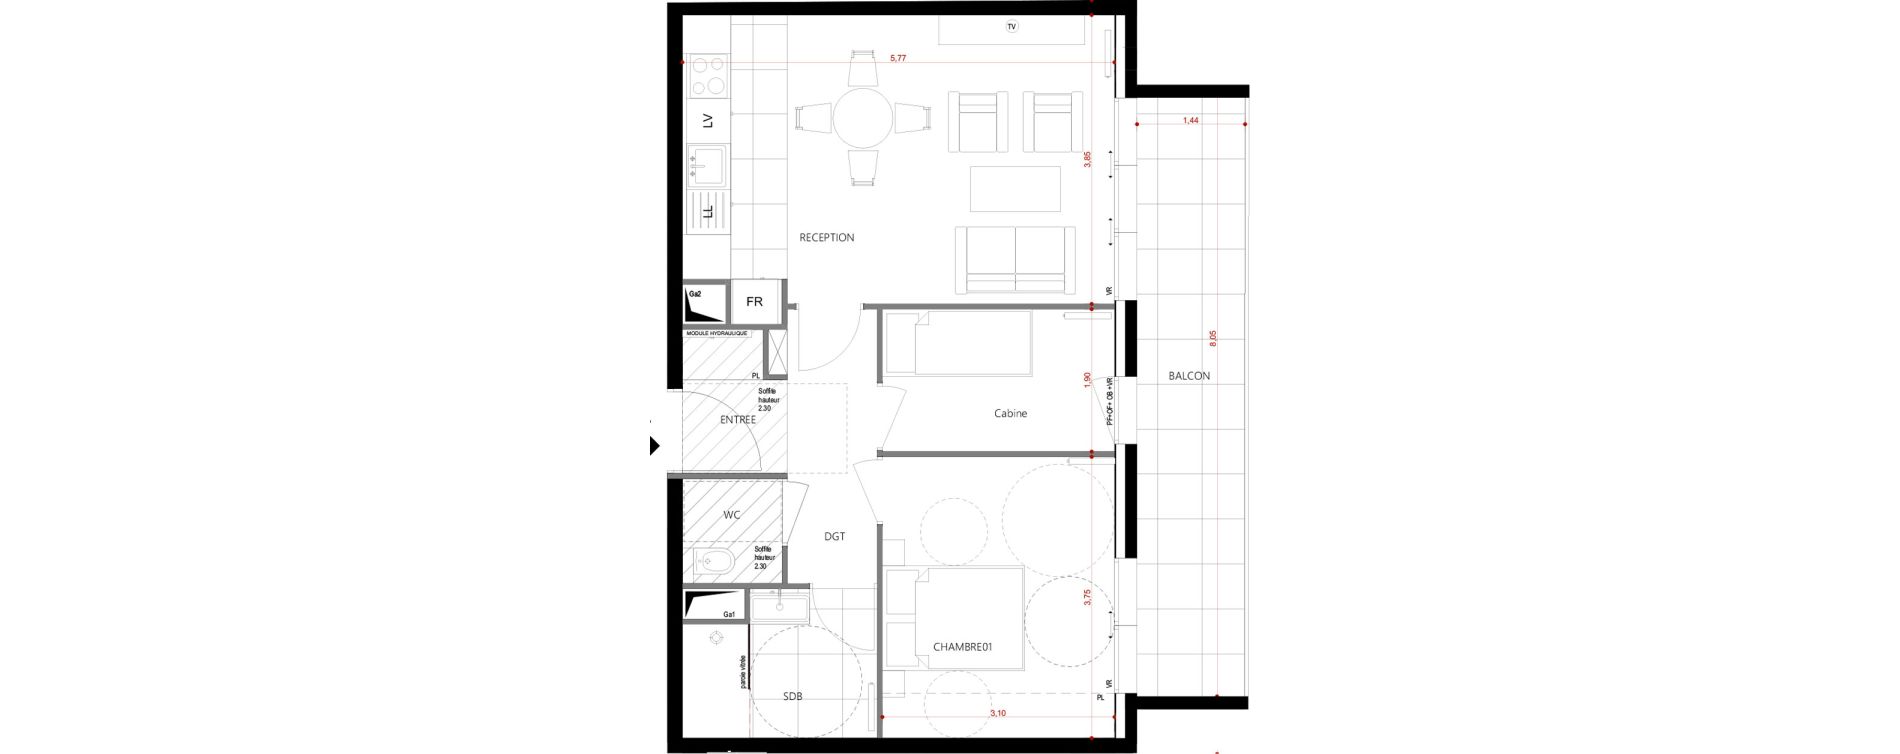 Plan appartement T2 de 53,15 m² neuf, résidence « Alcôve » Le Touquet ...